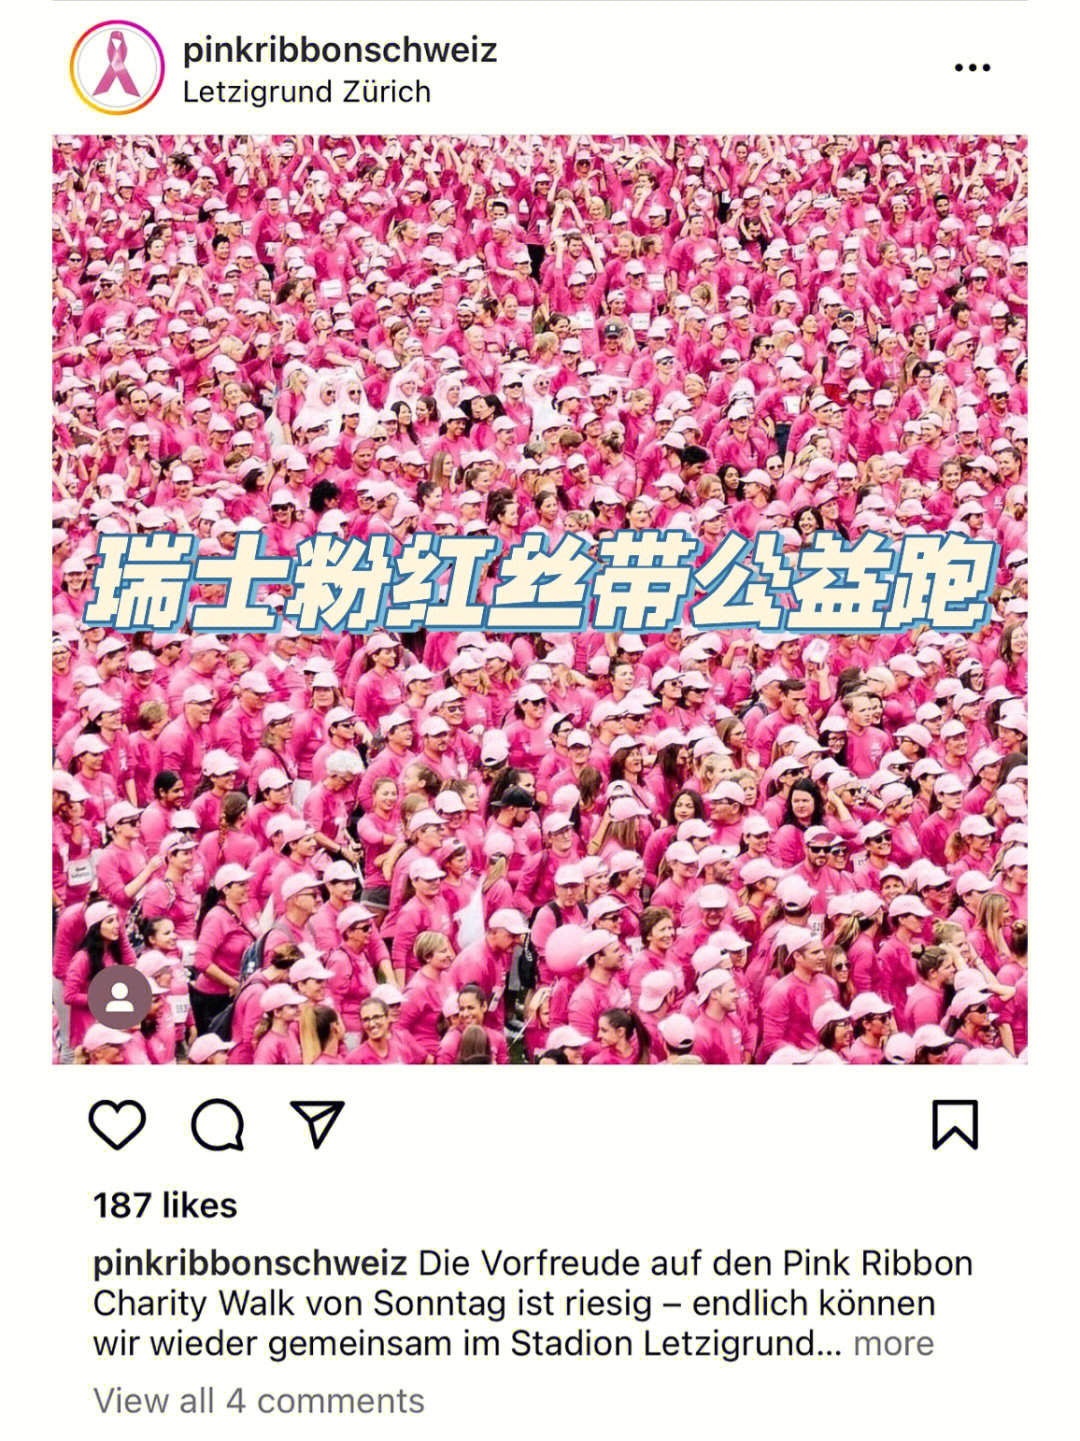 乳腺癌是瑞士女性癌症死亡的最常见原因粉红丝带公益跑是一年一度